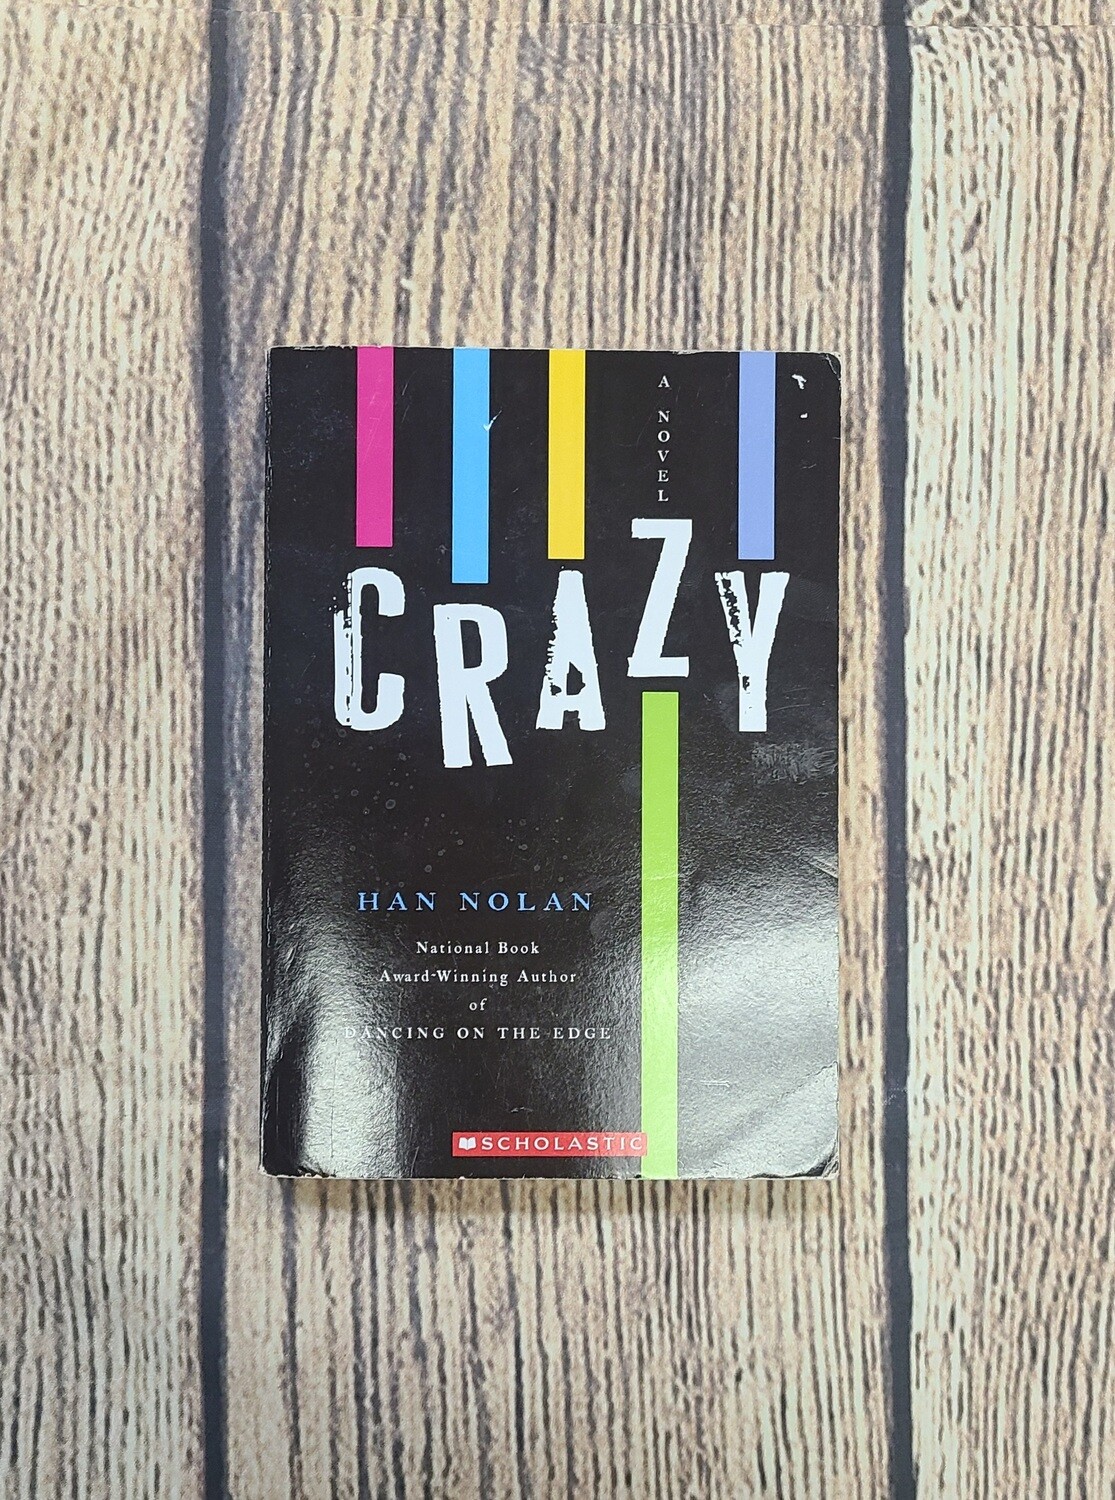 Crazy by Han Nolan